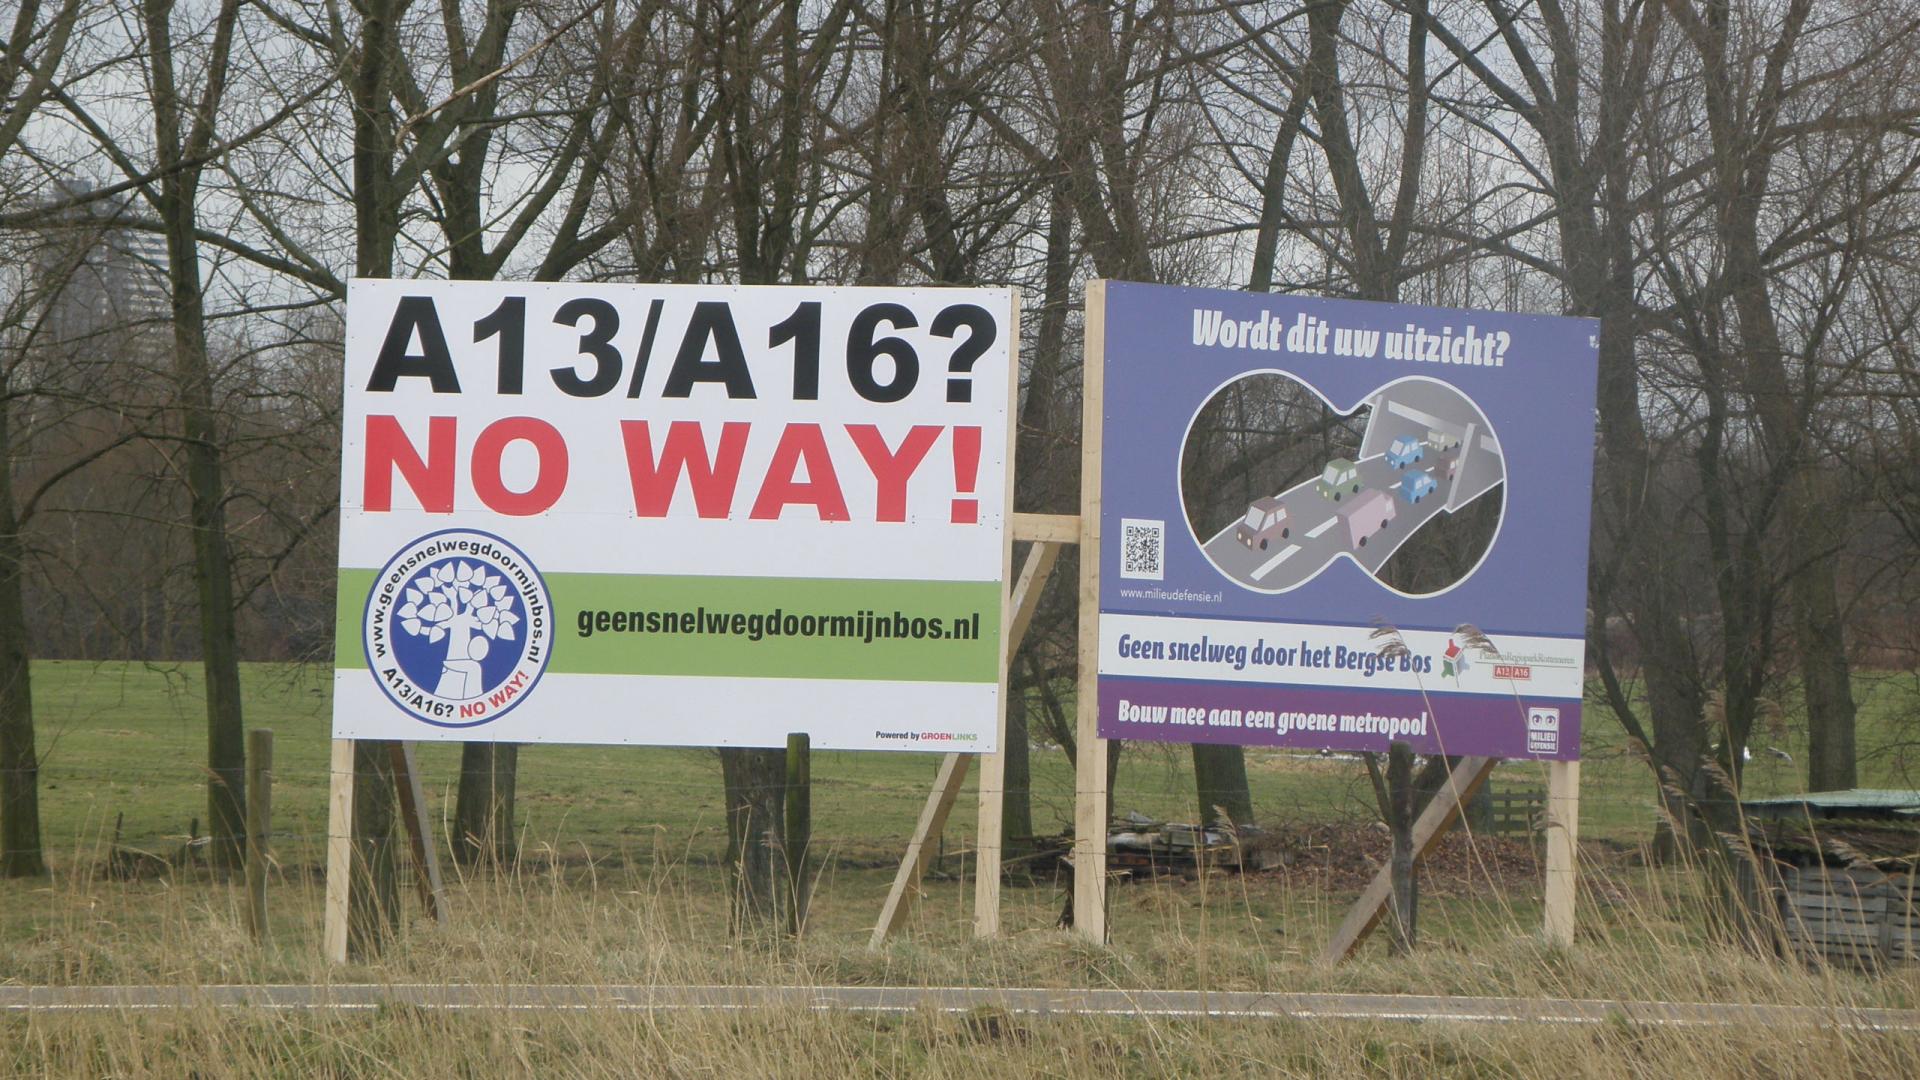 Protestborden tegen de aanleg van de A13/A16 langs de beoogde route